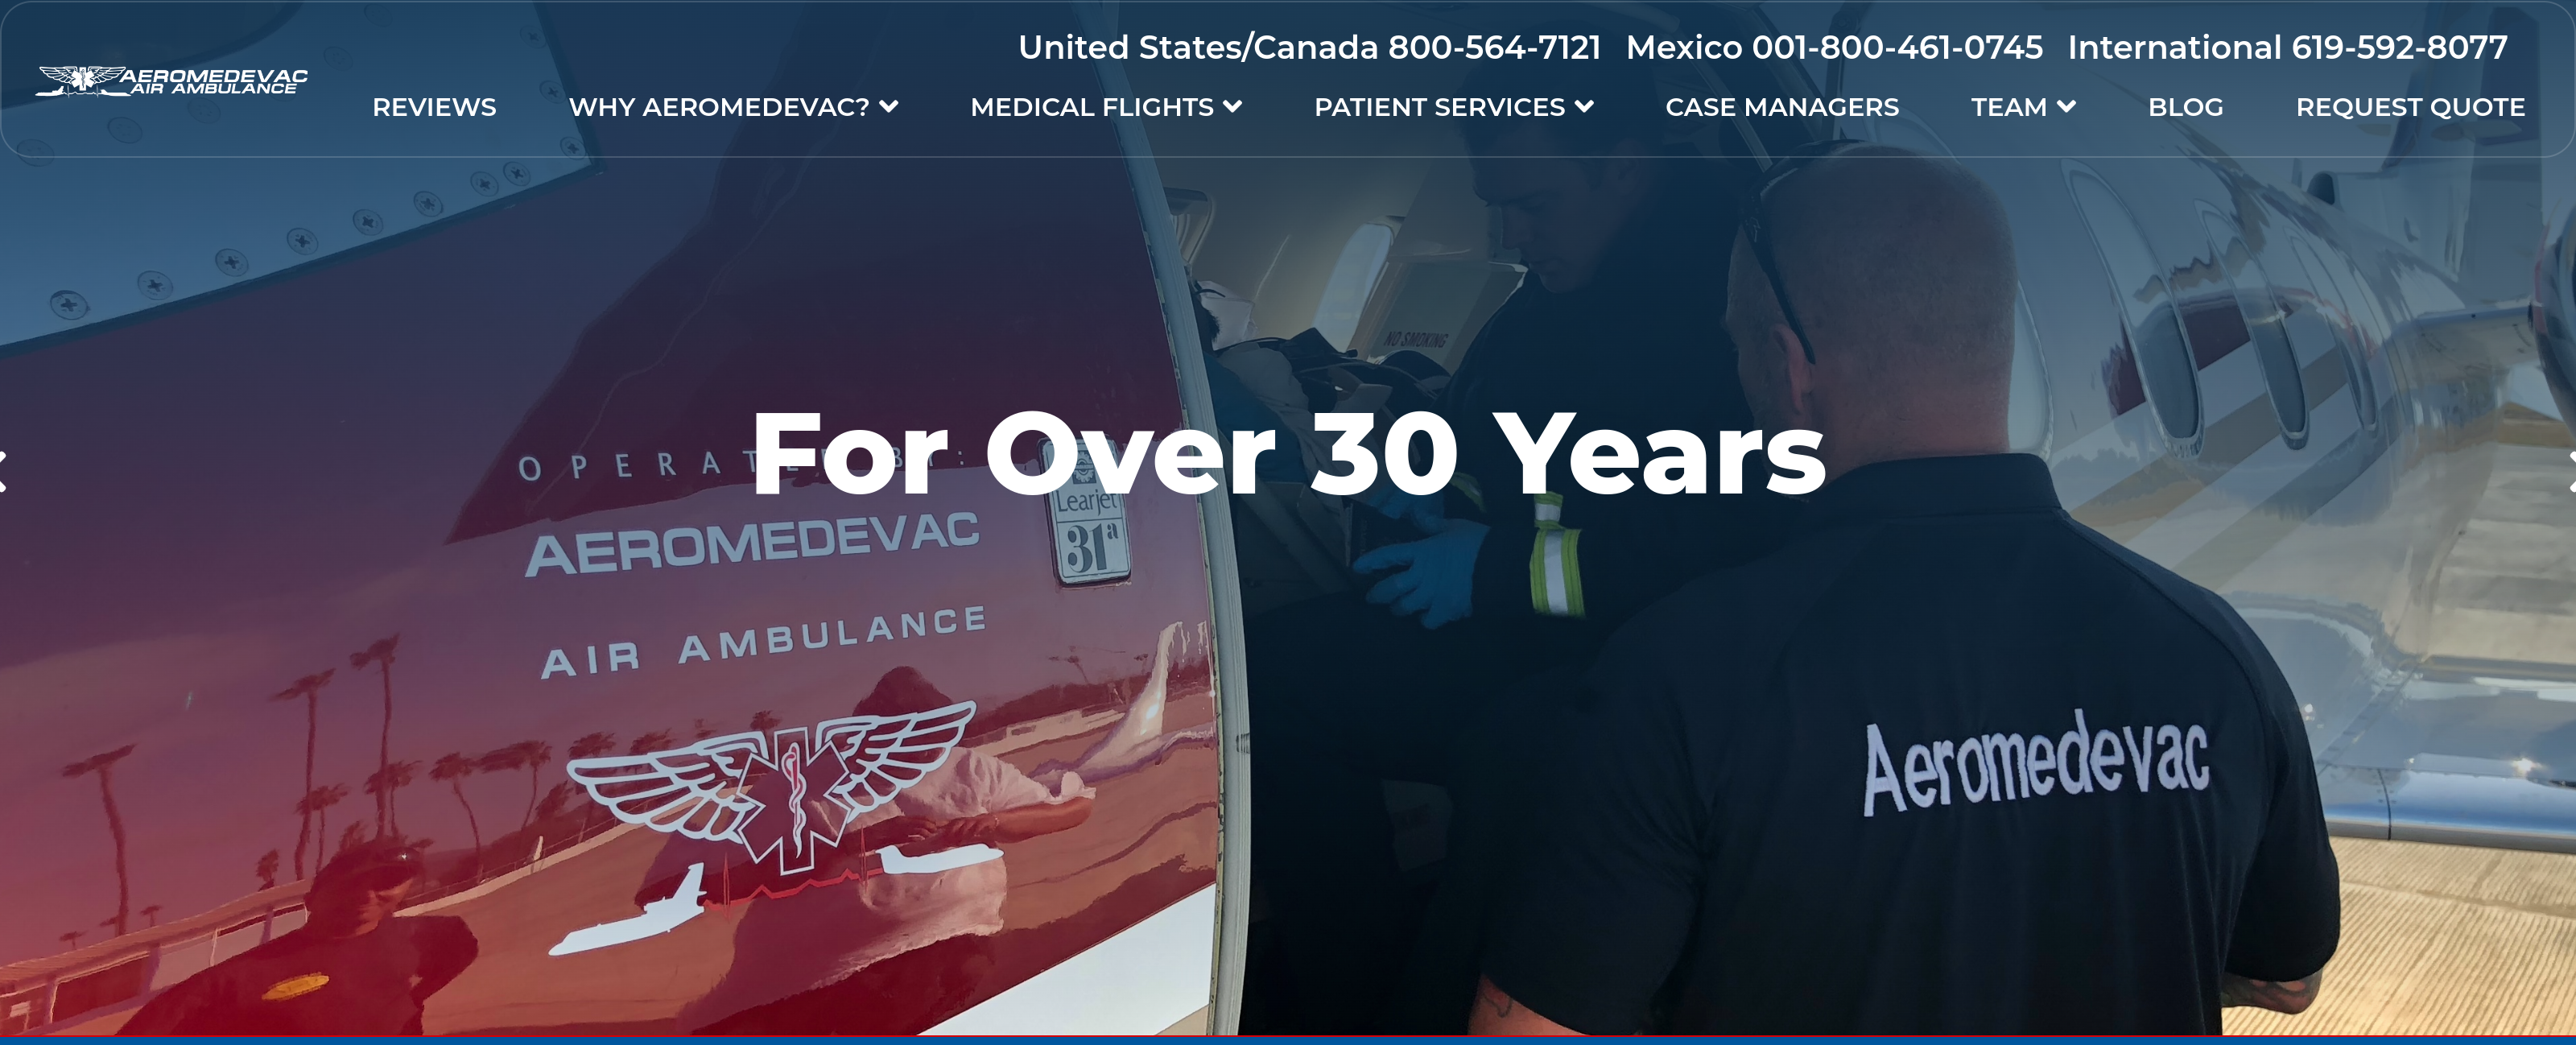 Vista previa del nuevo sitio web de ambulancias aéreas Aeromedevac.com 